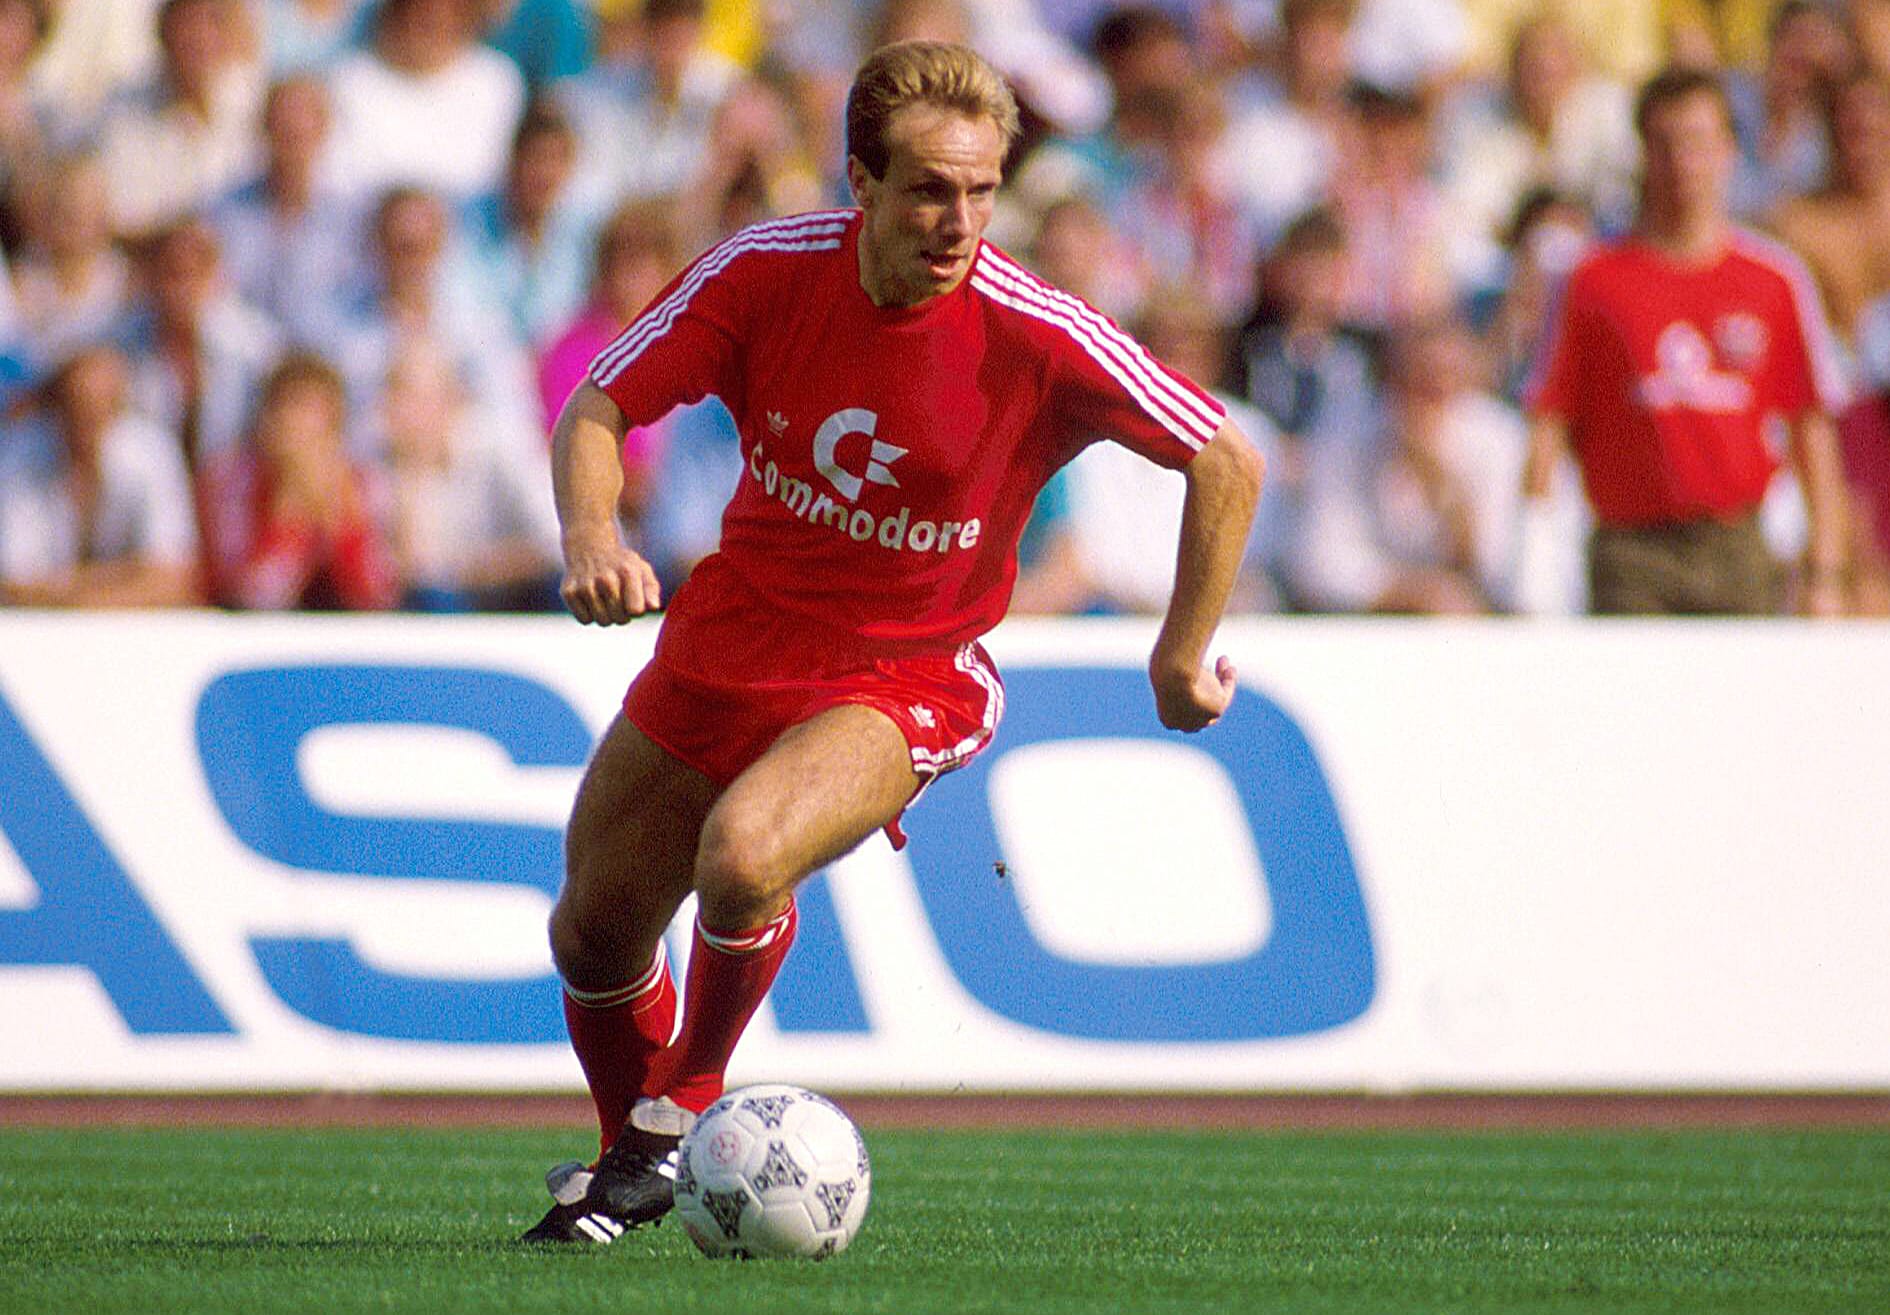 Die erste Vorführung im Wechseltheater von Dortmund und Bayern ging 1988 über die Bühne. Damals ging Michael Rummenigge nach sieben Jahren in München zum BVB (Ablöse unbekannt). Dort gewann der kleine Bruder von Karl-Heinz im ersten Jahr den DFB-Pokal und wurde später sogar Spielführer.